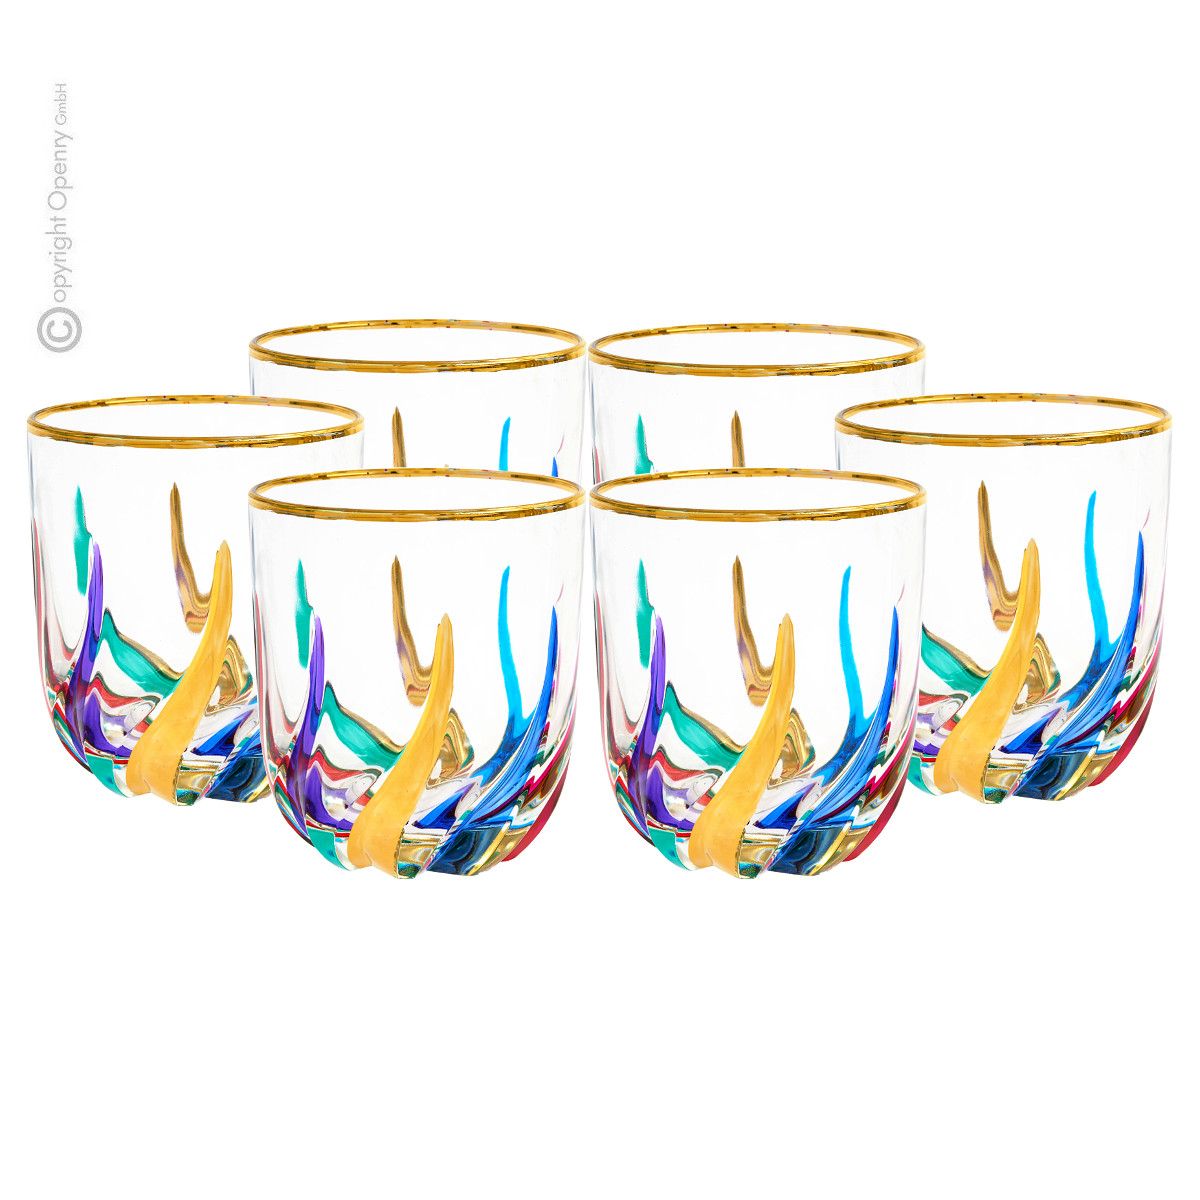 Trix Collection Multi-Colored Hi-Ball Glass (Italian Glass